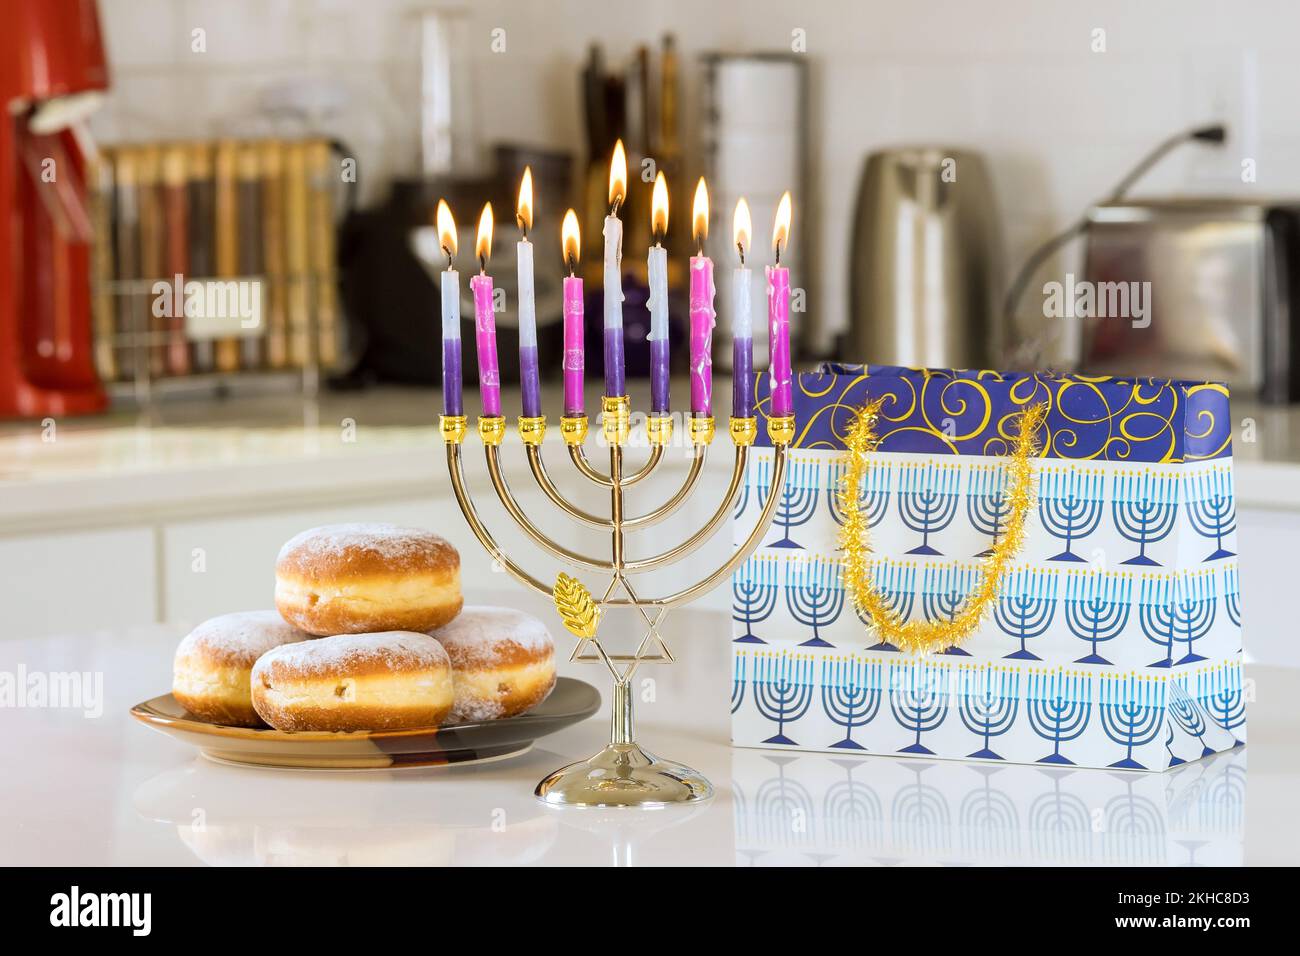 Hanukkah célébration judaïsme tradition famille religieux symboles de vacances éclairant des bougies sur la manoukkiah menorah pendant Hanoukkah Banque D'Images